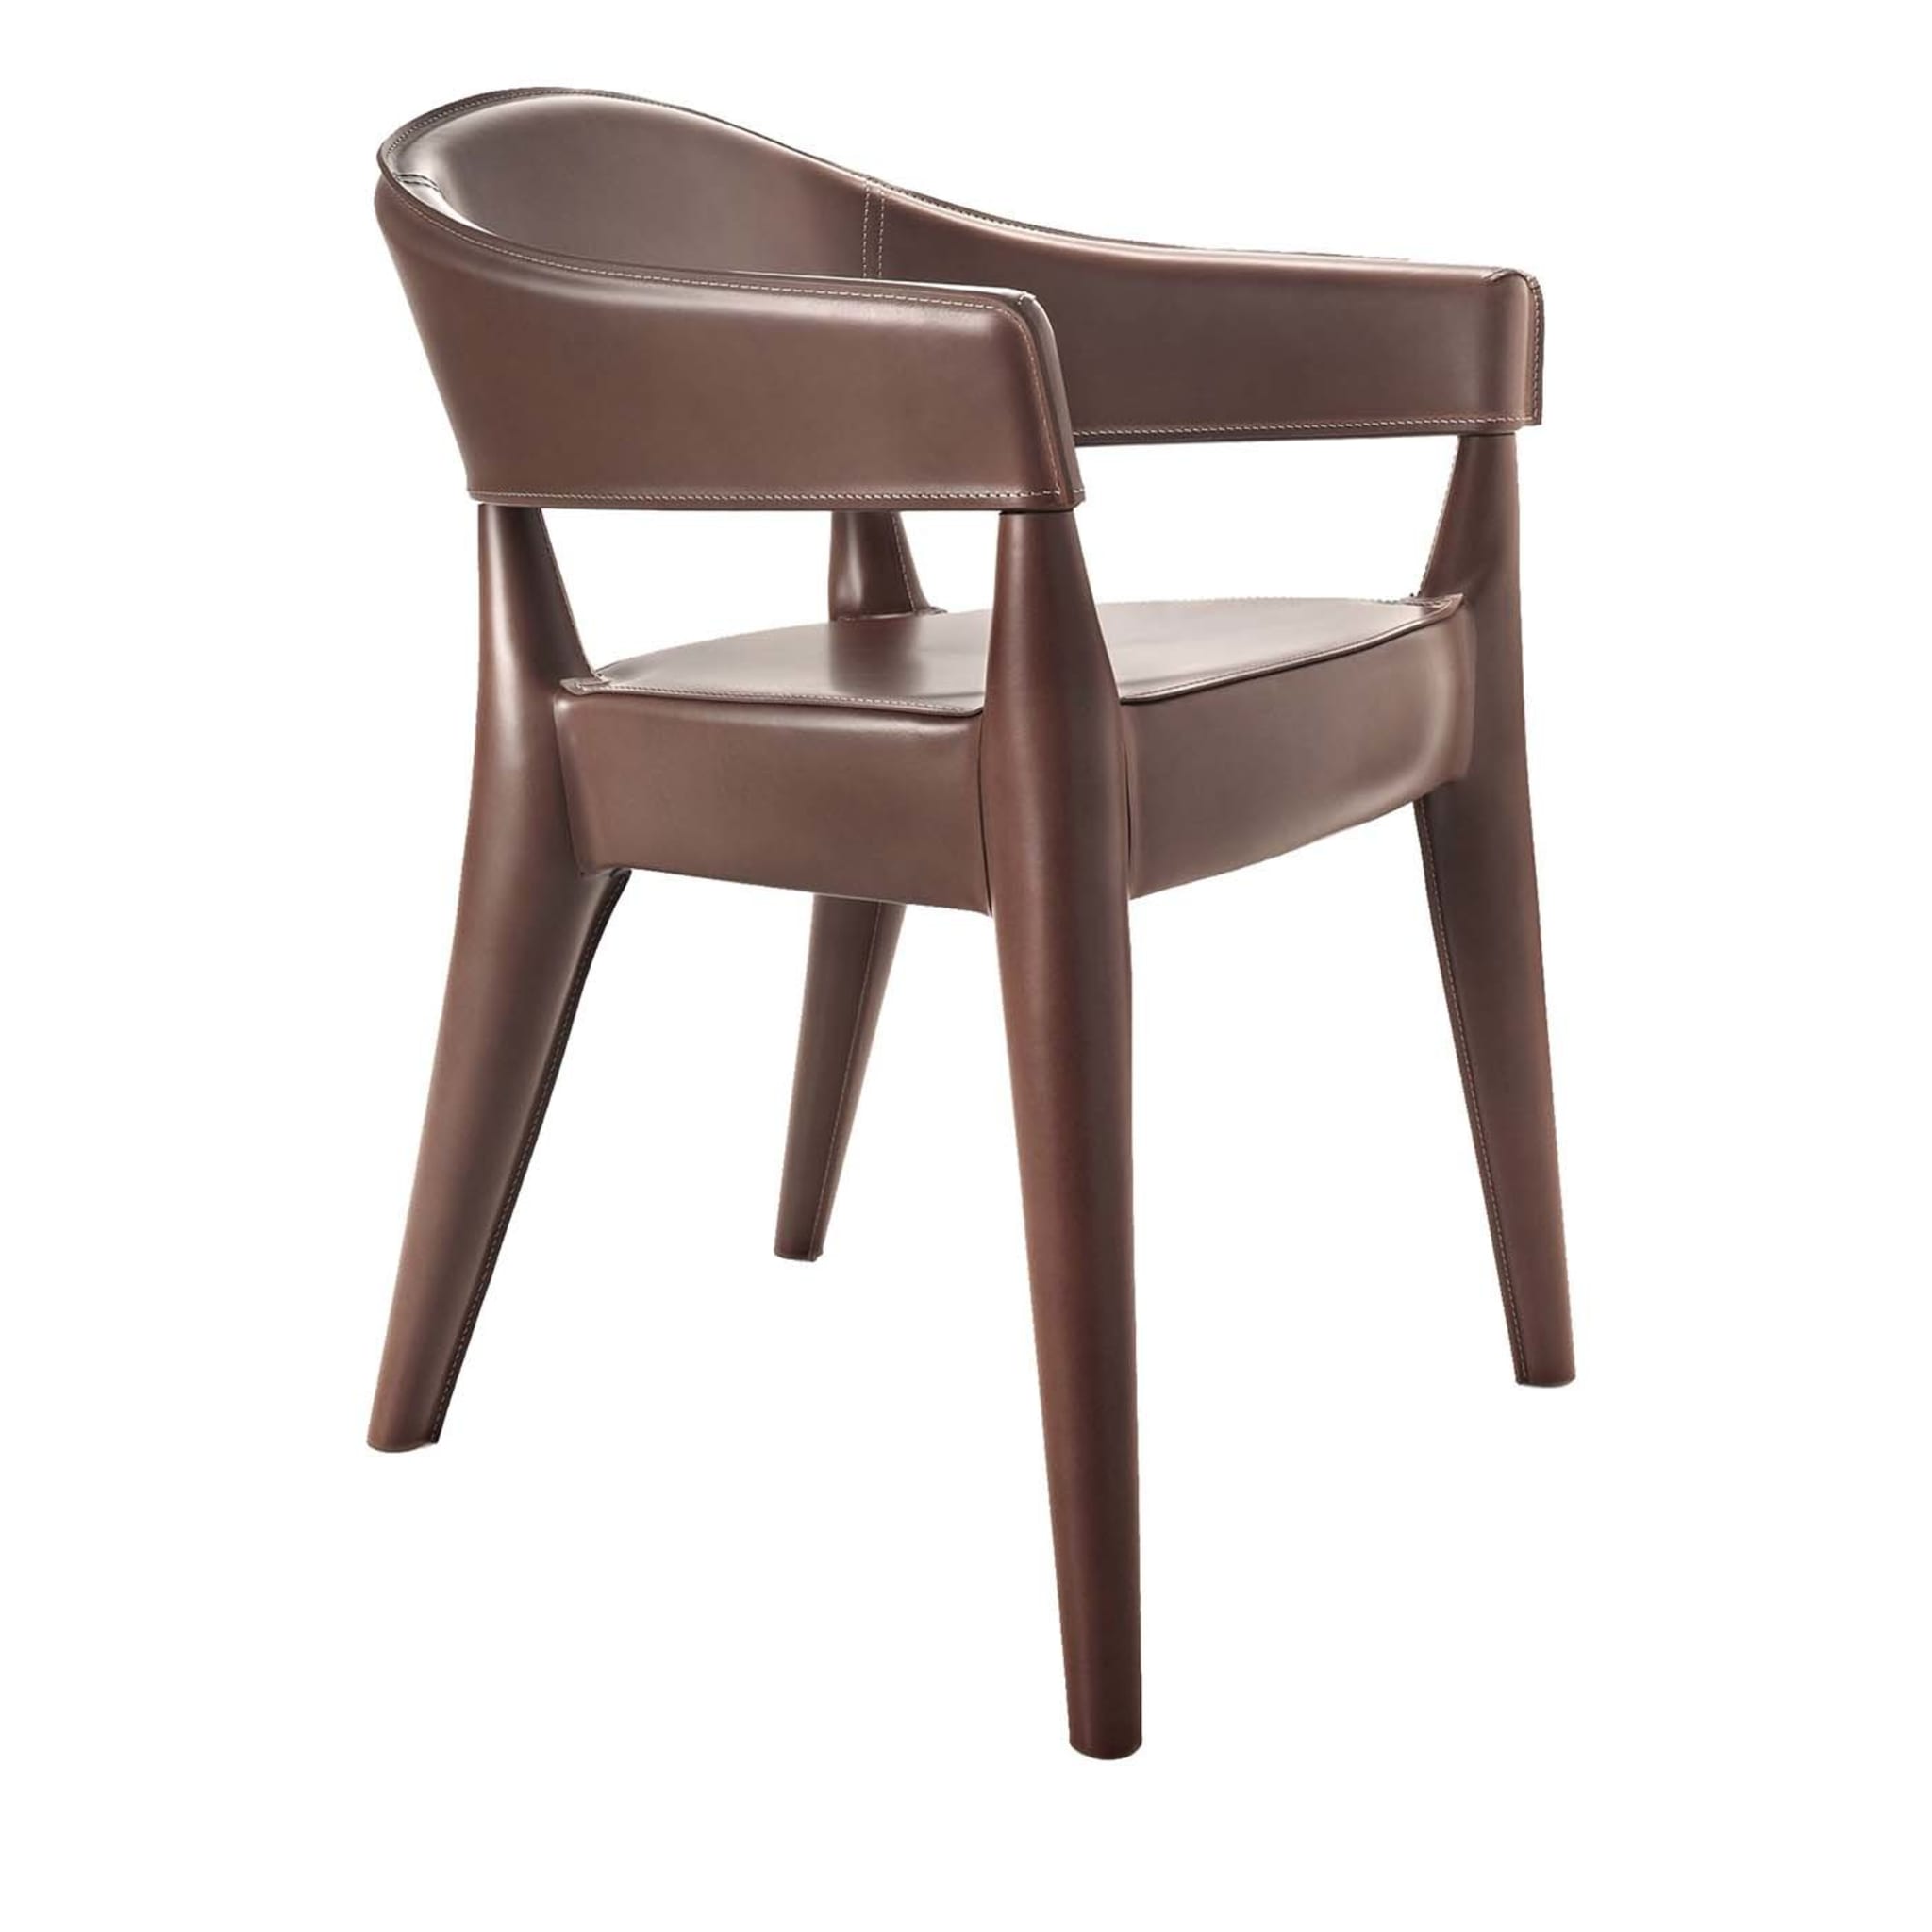 AGATA ARMCHAIR - Chairs from ALMA Design